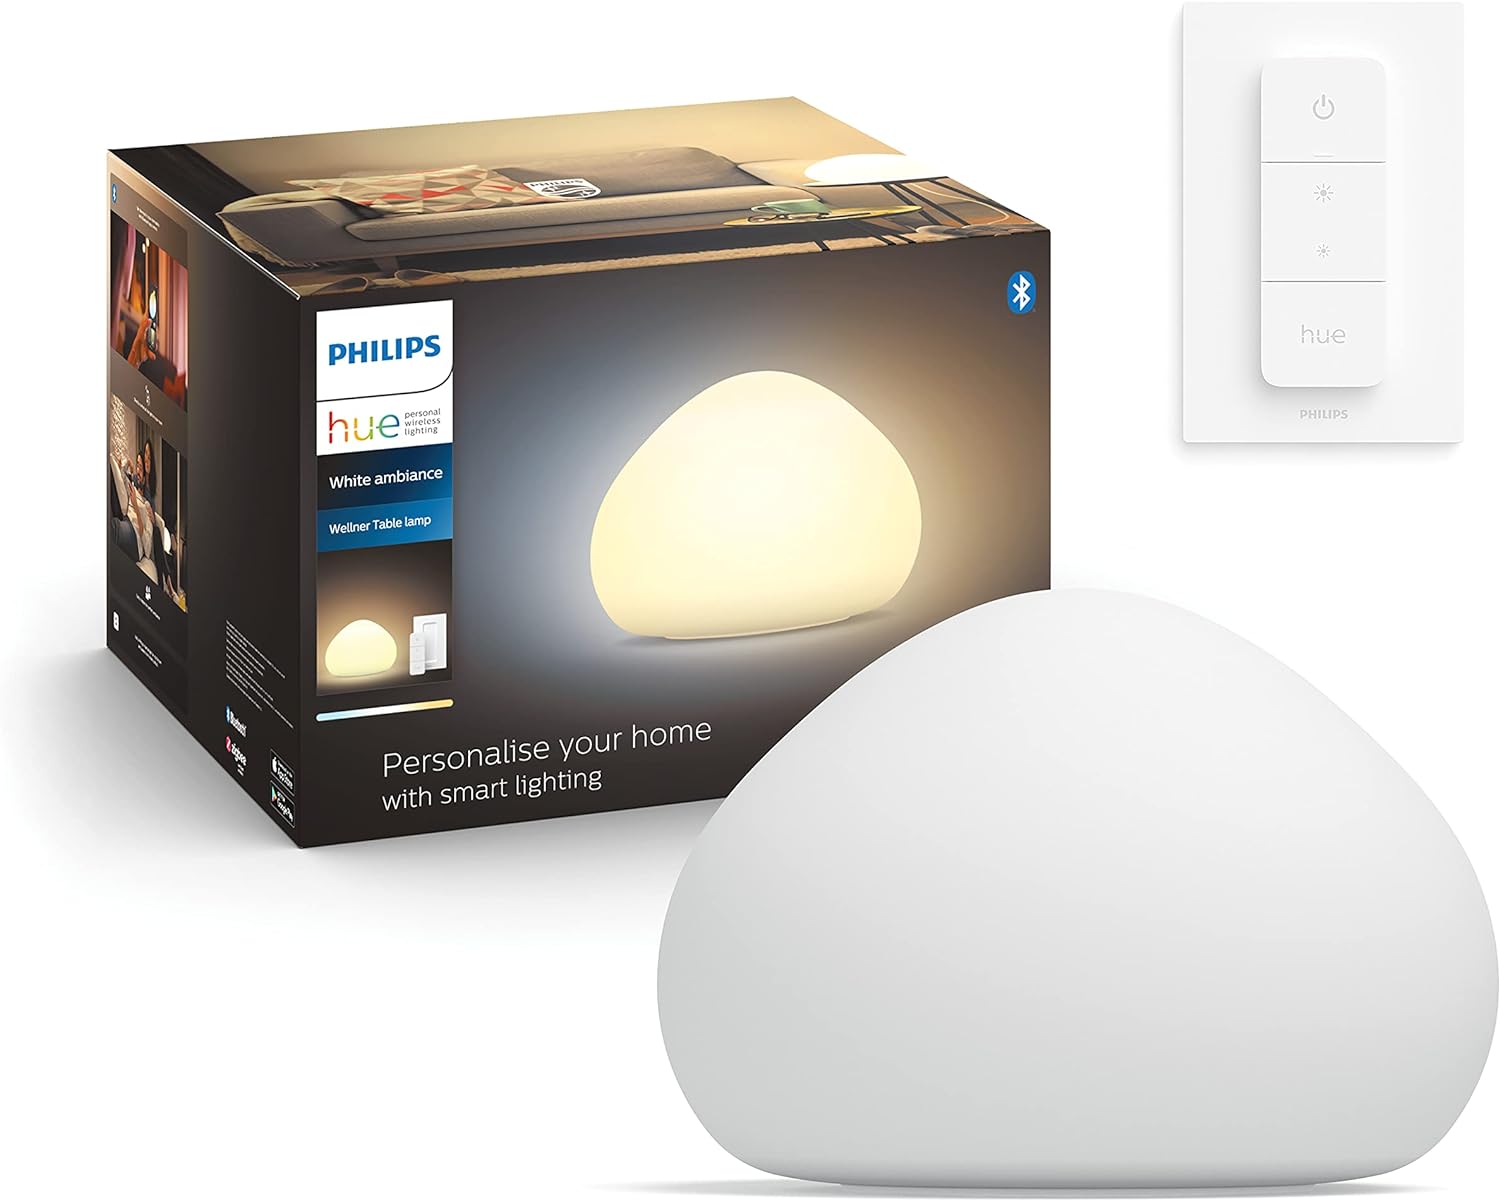 Philips Hue Wellner Tafellamp - Warm tot Koelwit Licht - Incl. dimmer switch - Dimbaar - Verbind met Bluetooth of met Hue Bridge - Werkt met Alexa en Google Home - Wit